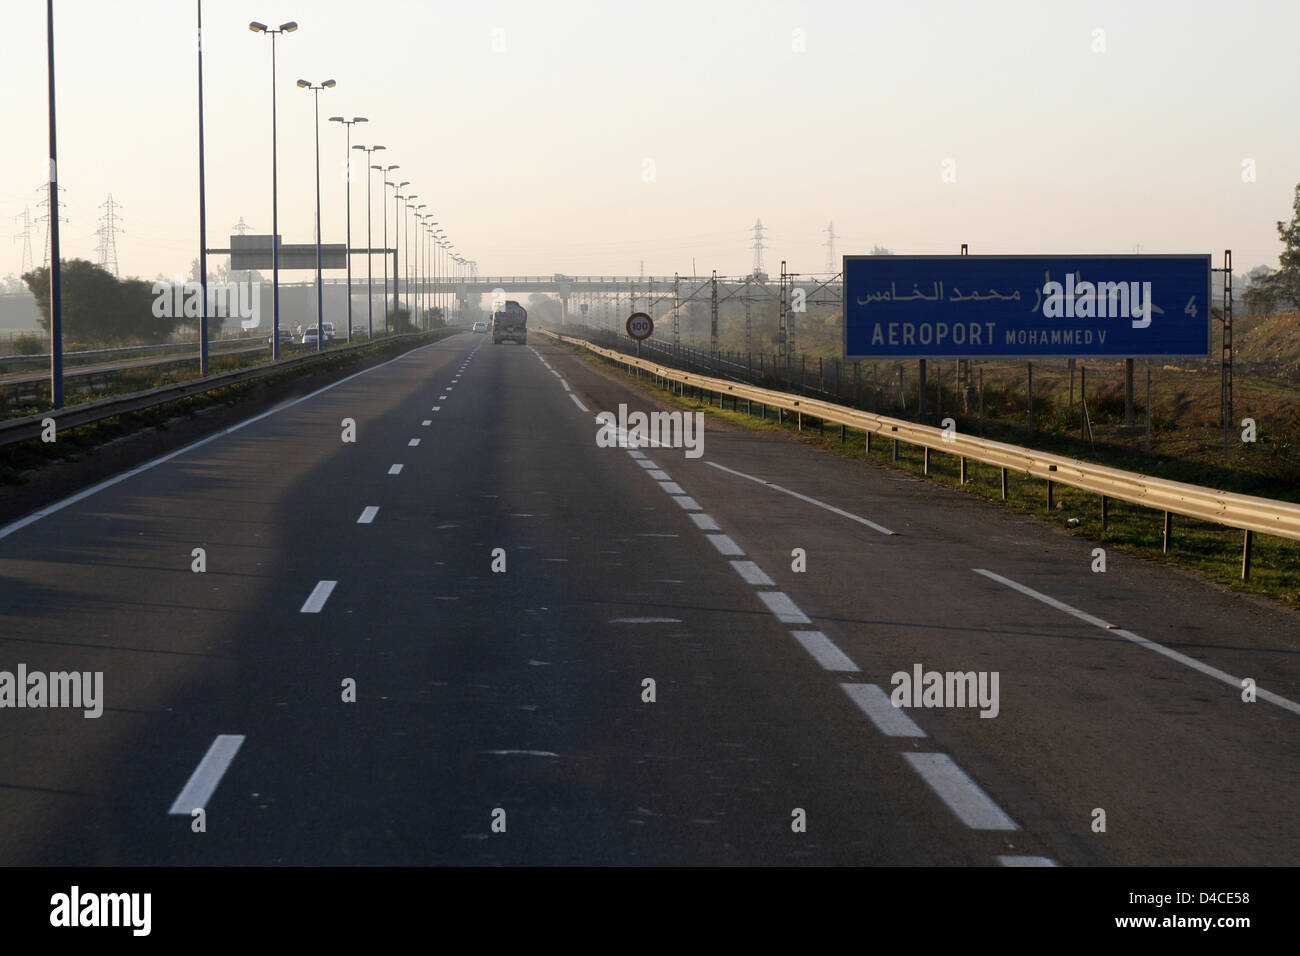 Una autostrada che conduce verso l'aeroporto Mohammed V di Casablanca, Marocco, 17 dicembre 2007. Foto: Lars Halbauer Foto Stock